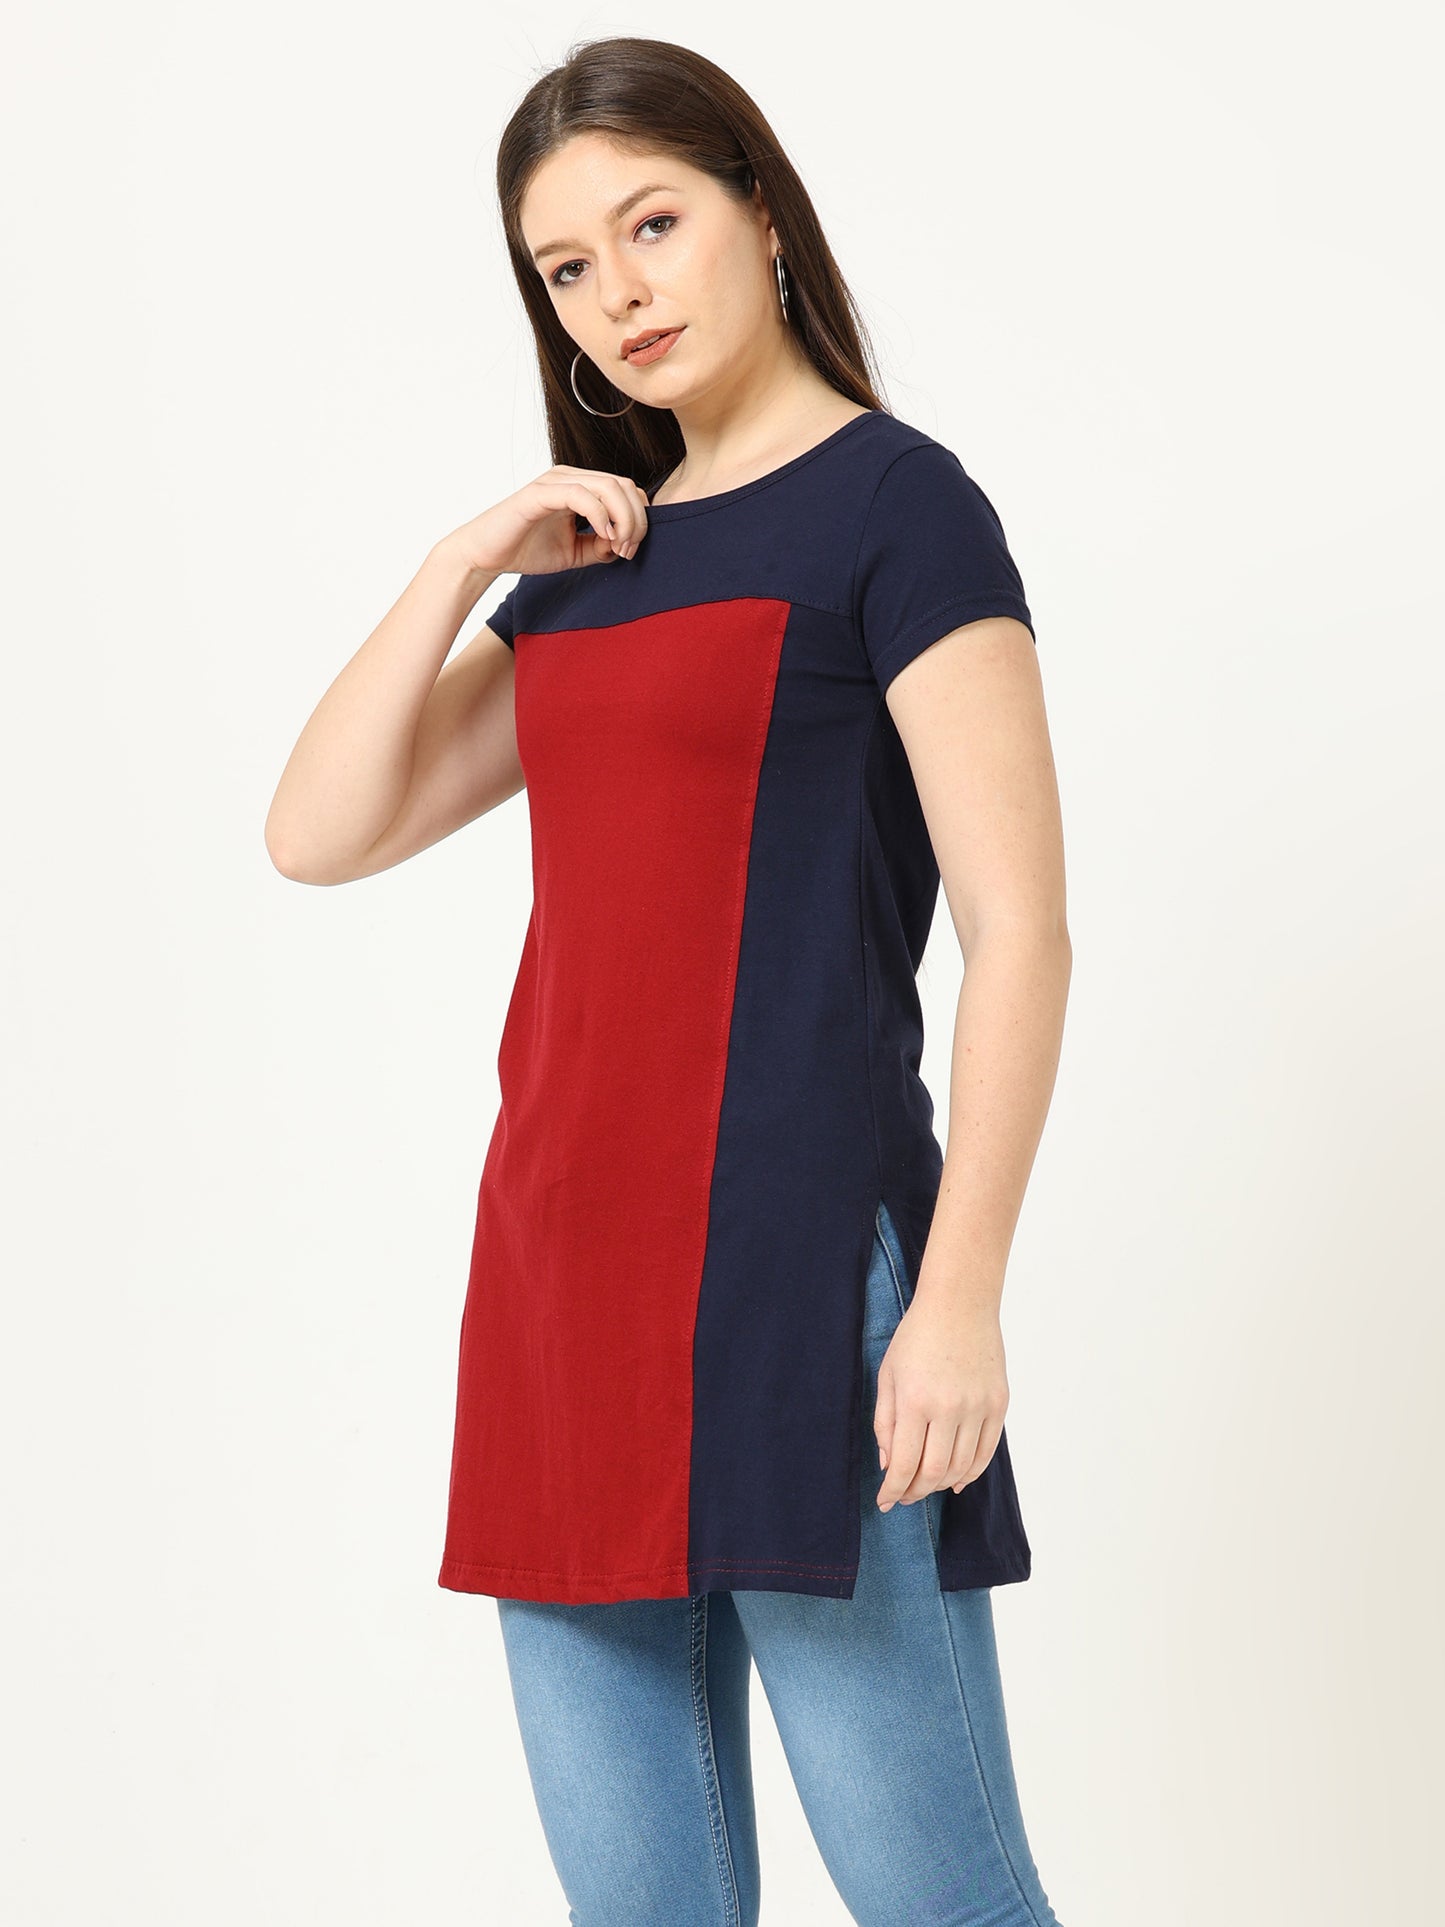 Women's Cotton Color Block Multi Color Long Top